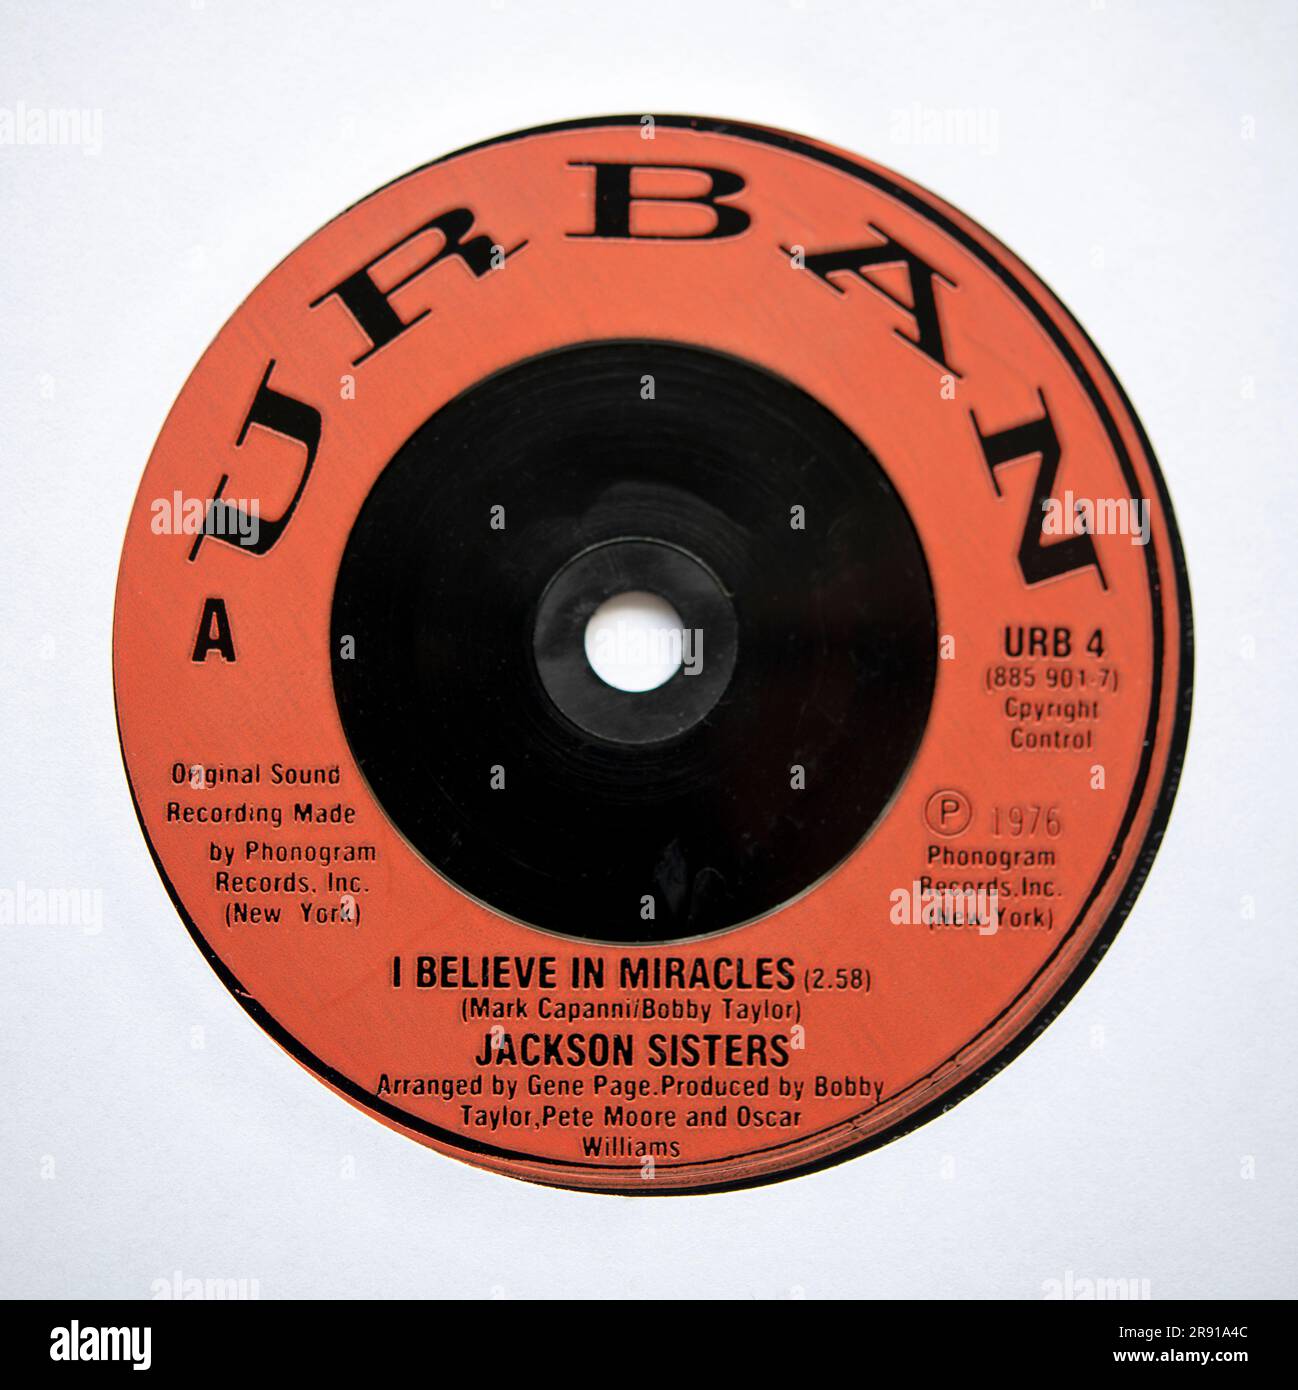 Etichetta Centre della versione single da sette pollici di i Believe in Miracles by the Jackson Sisters, pubblicata nel 1987 Foto Stock